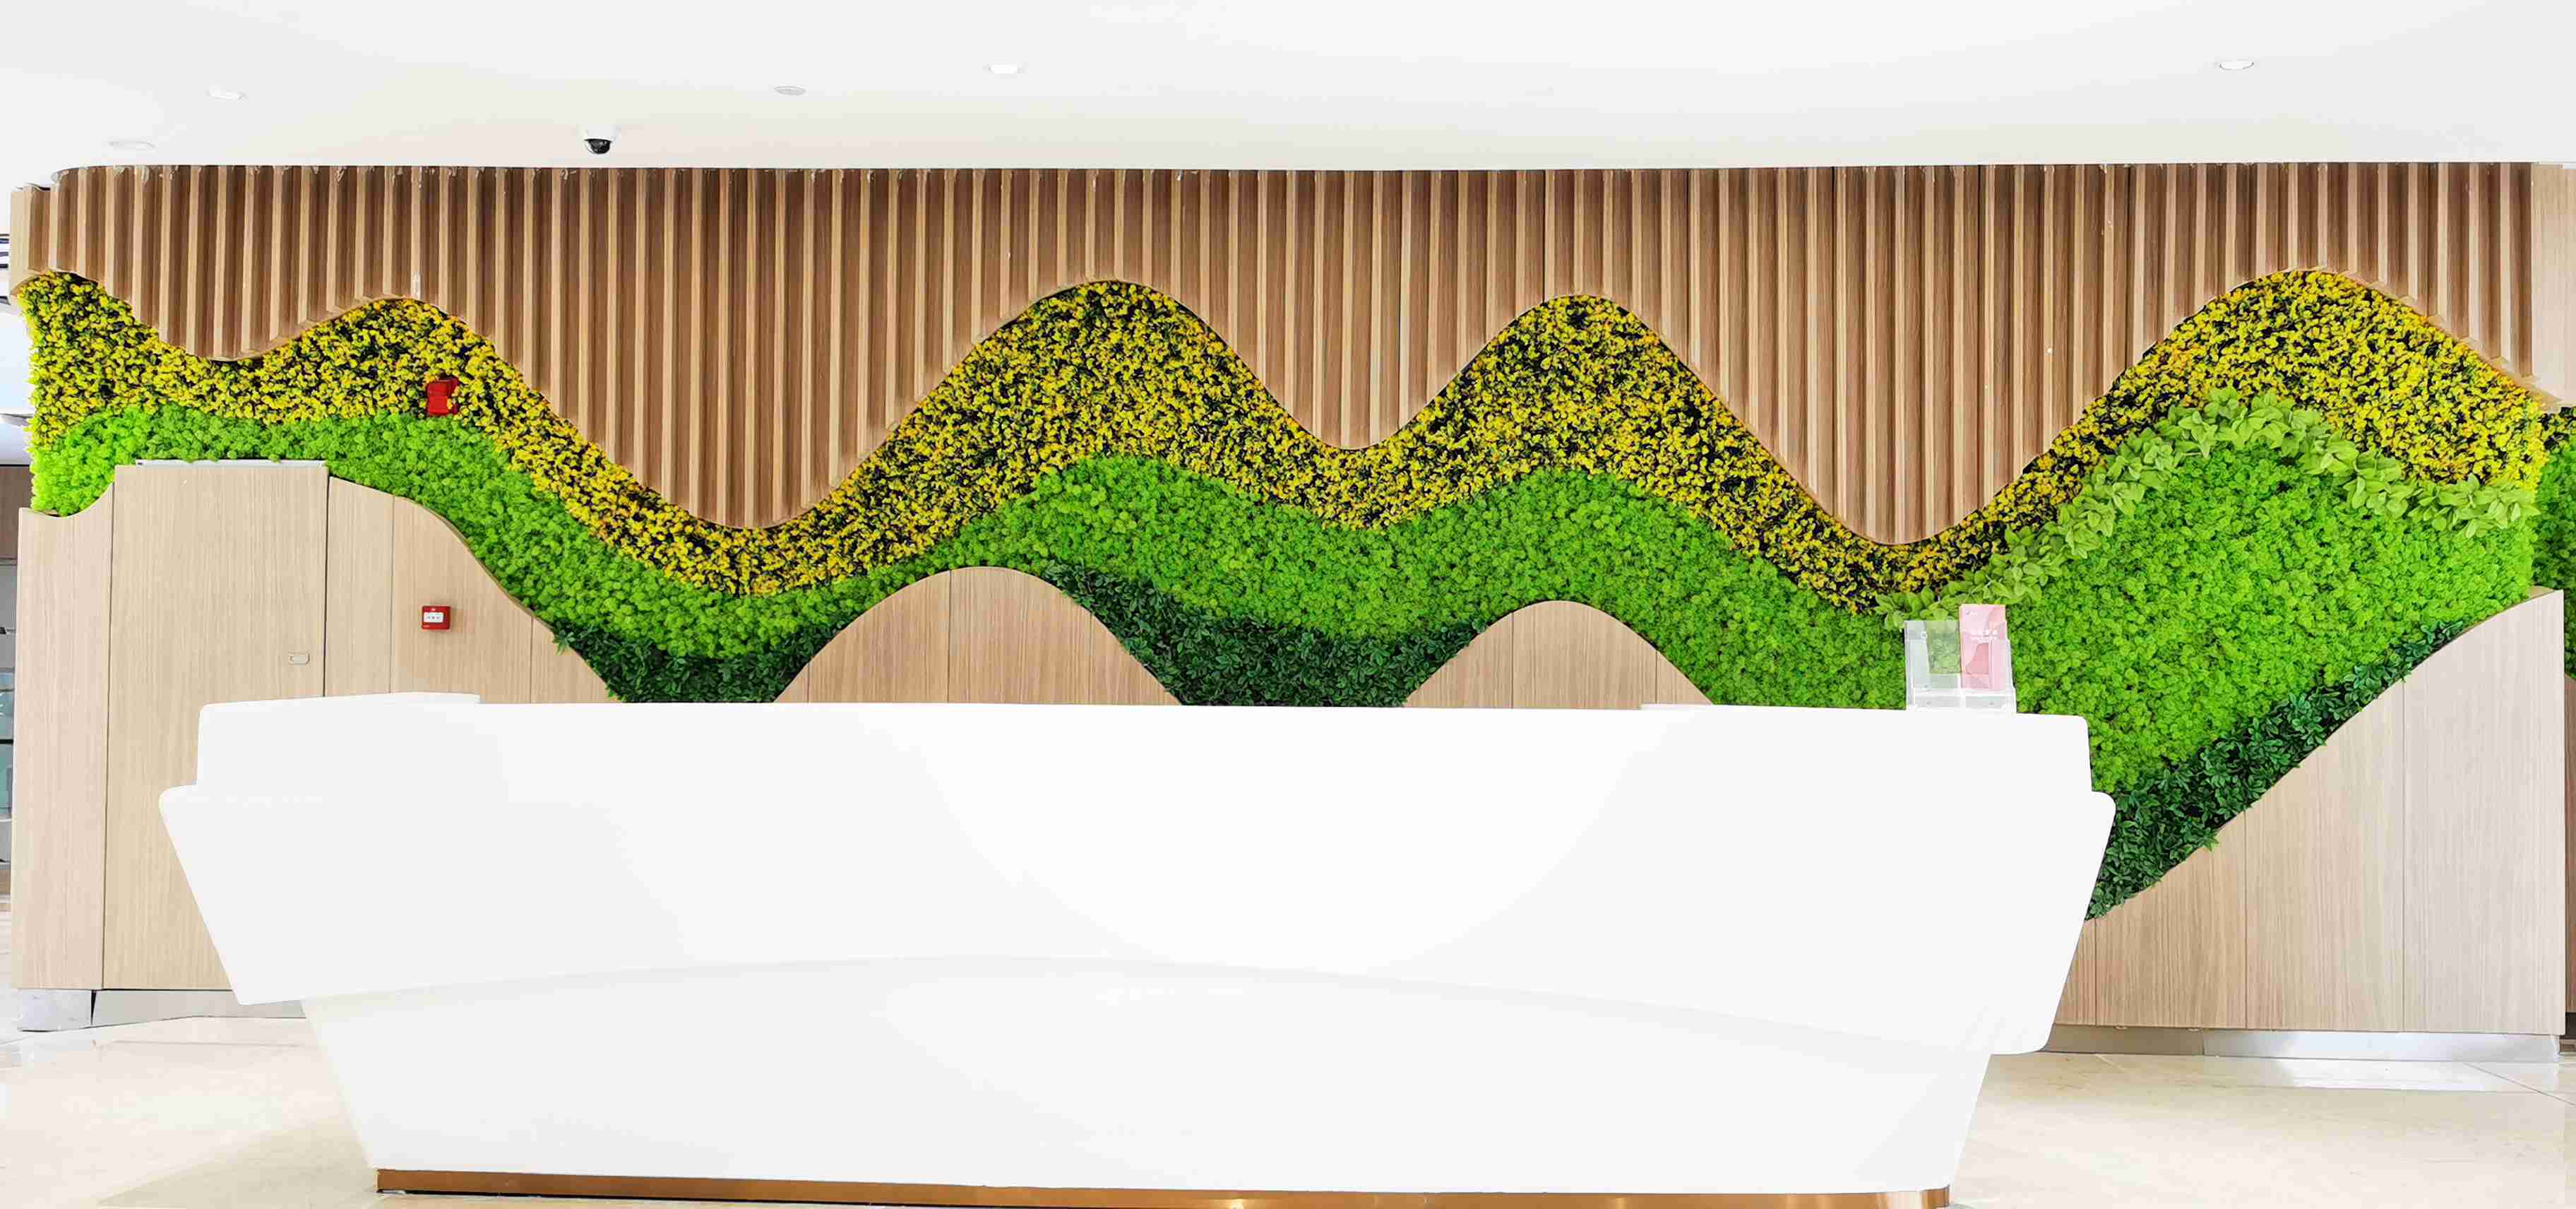 碧桂园,万达集团等知名企业定制安装了仿真植物墙或生态植物墙,设计师